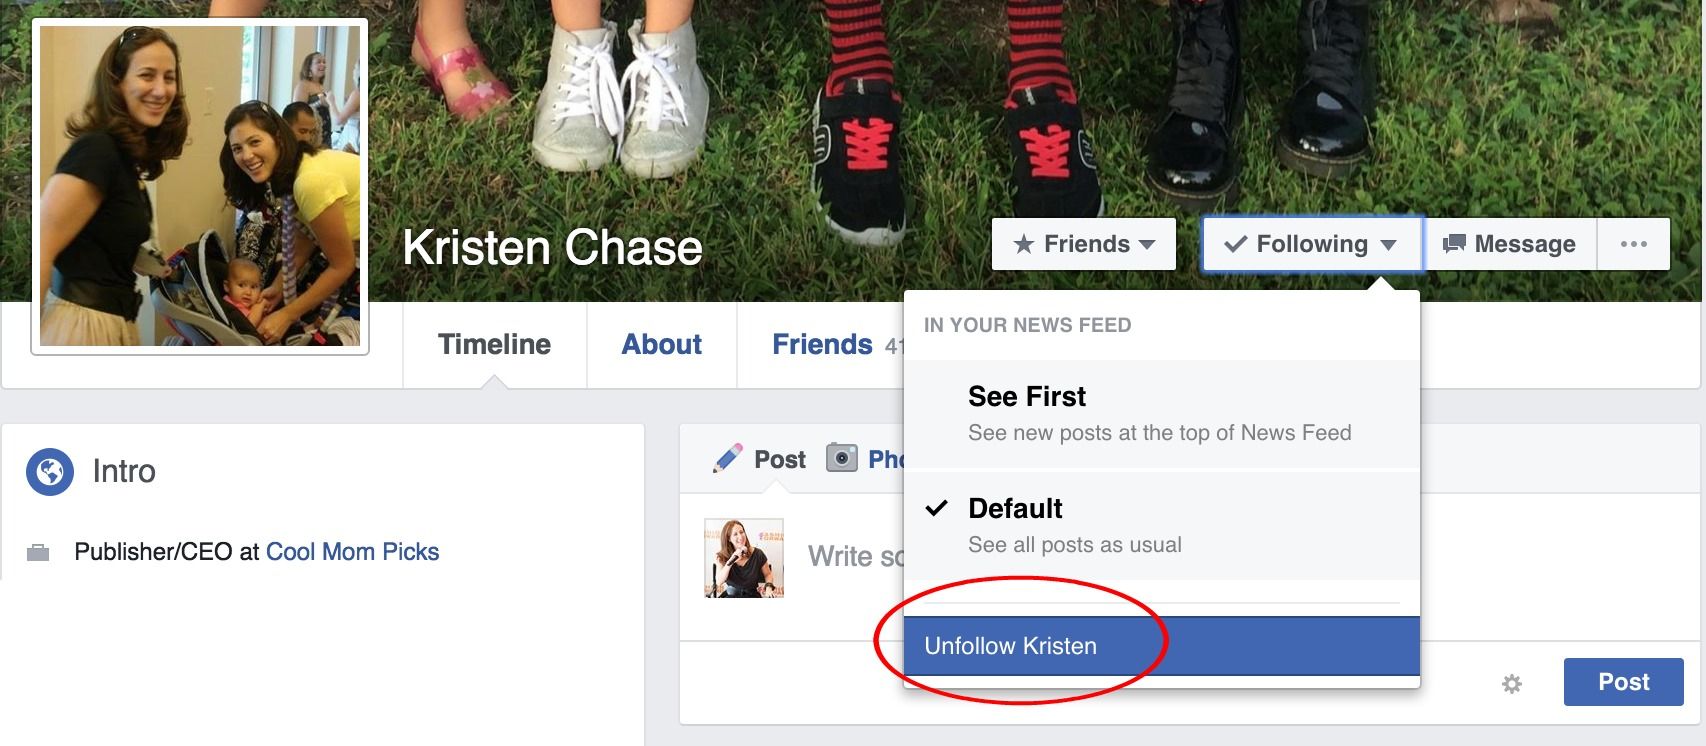 How to unfollow on Facebook without unfriending (because we'd never unfriend Kristen!) | coolmomtech.com